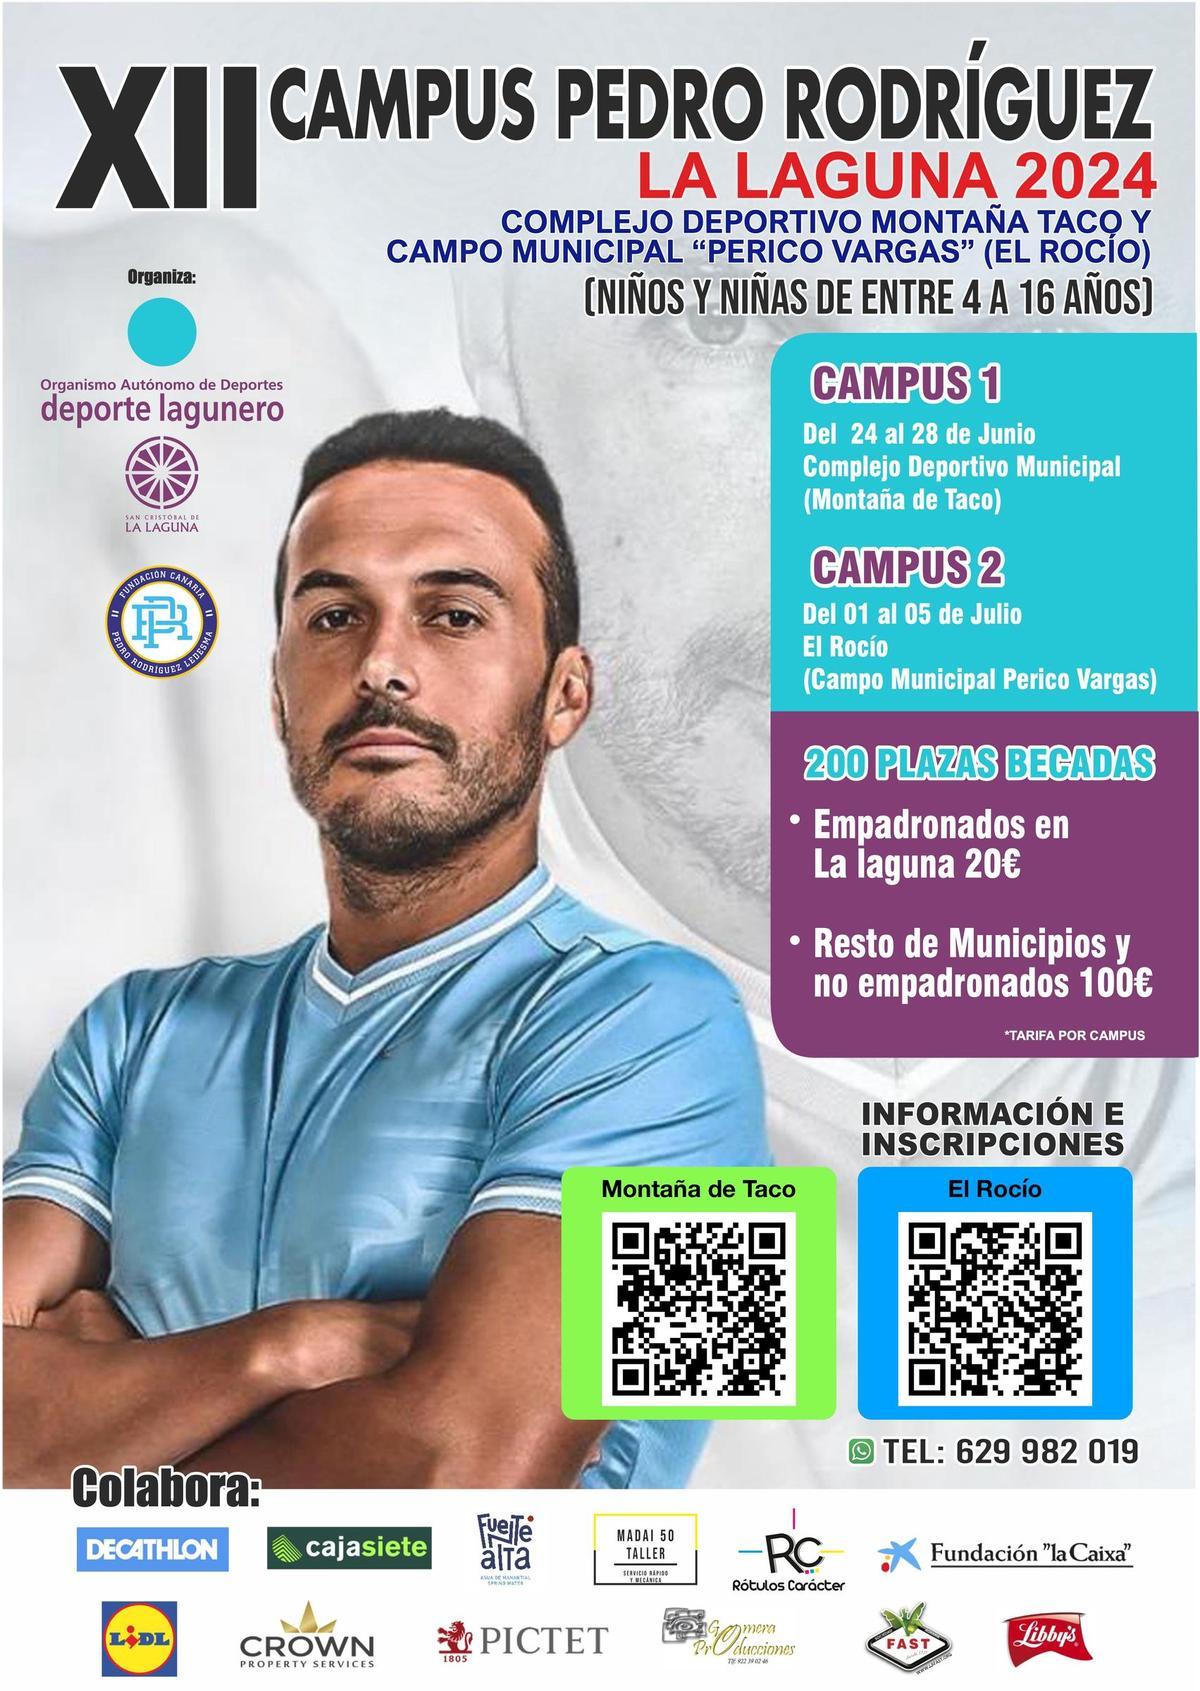 Cartel de la nueva edición del Campus Pedro Rodríguez La Laguna 2024